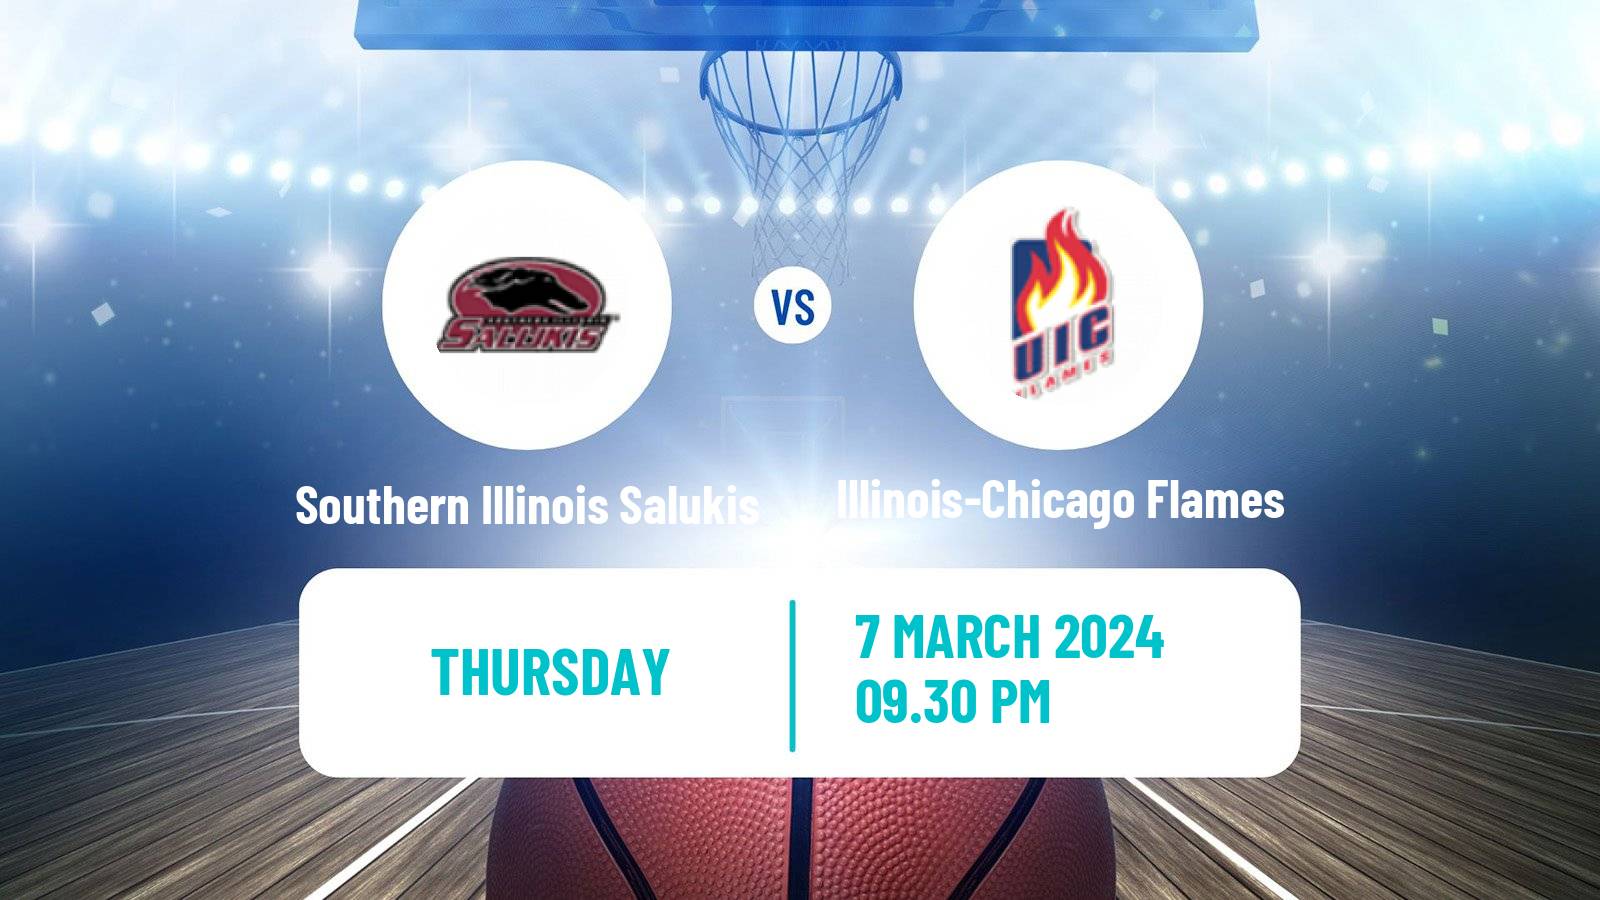 Basketball NCAA College Basketball Southern Illinois Salukis - Illinois-Chicago Flames